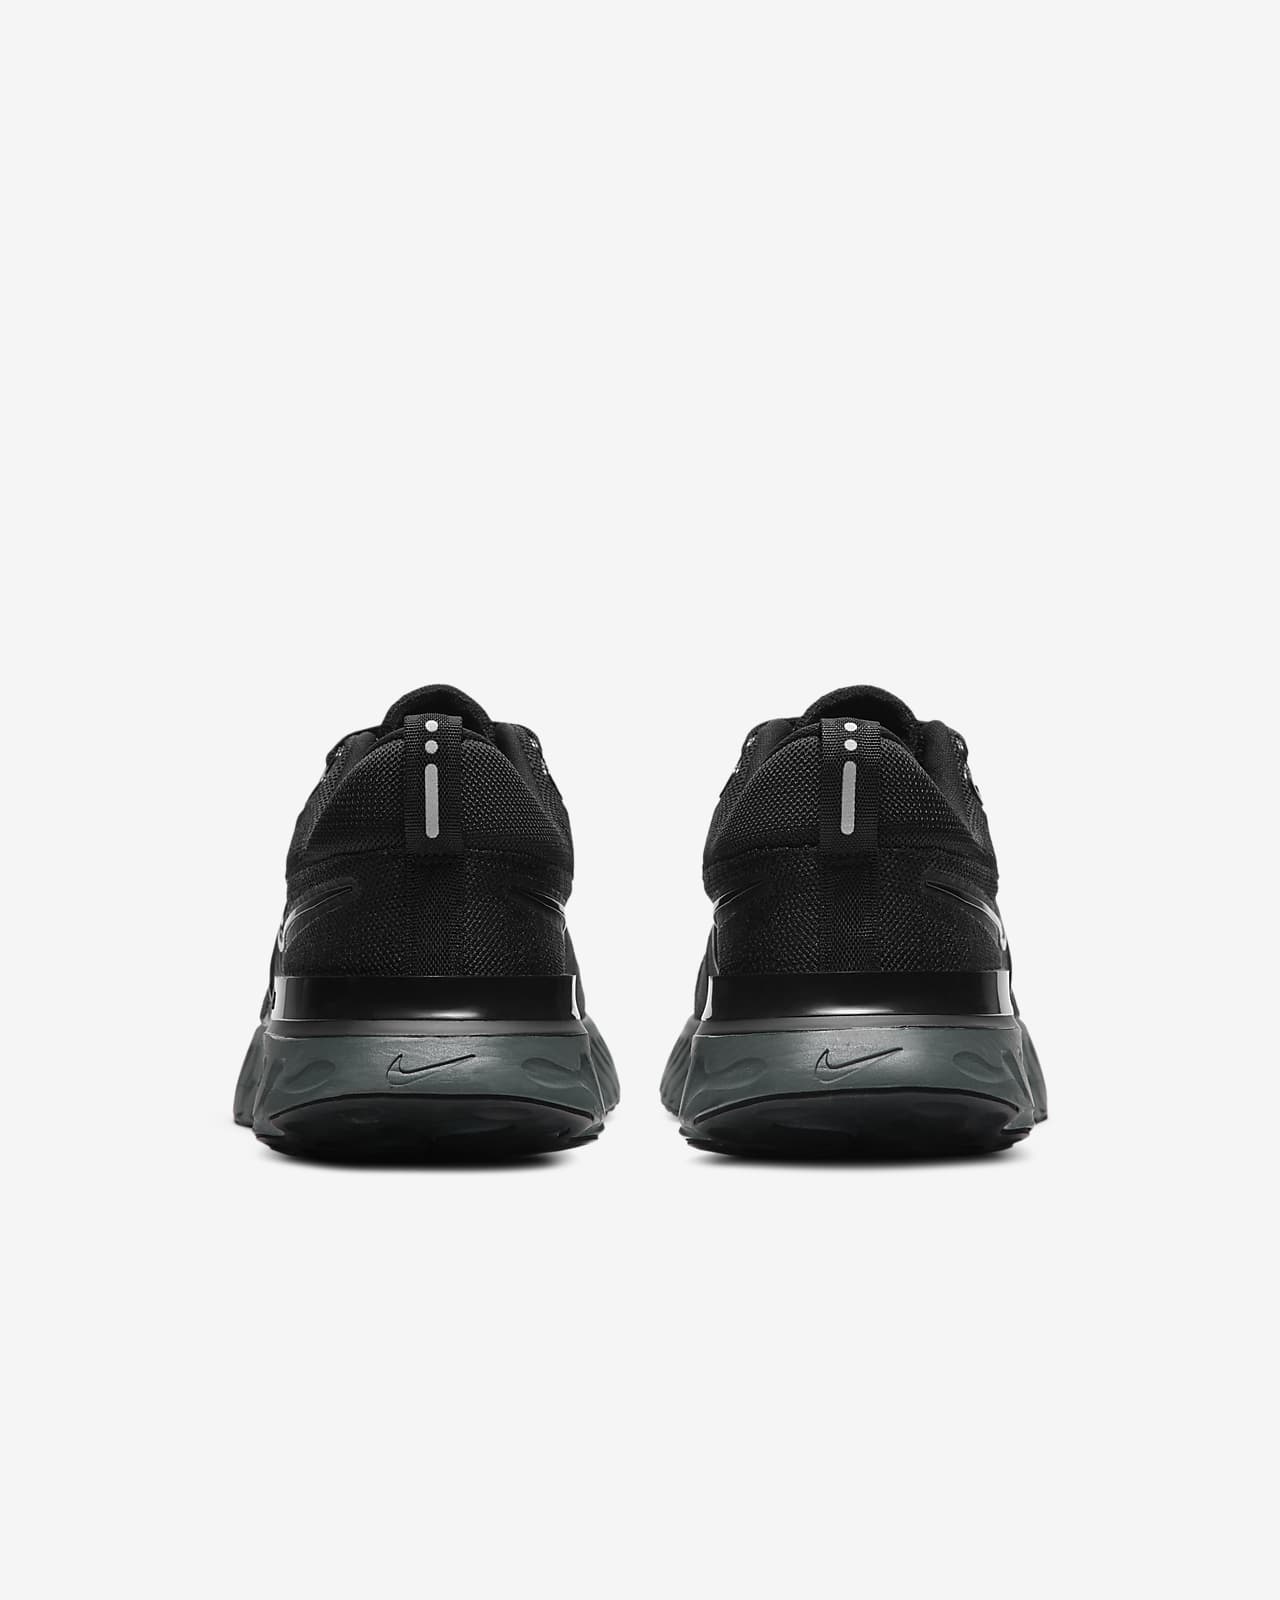 19936円 半額SALE★ ナイキ レディース ランニング スポーツ Nike Women's React Infinity Run Flyknit 2 Running Shoes Black Grey White